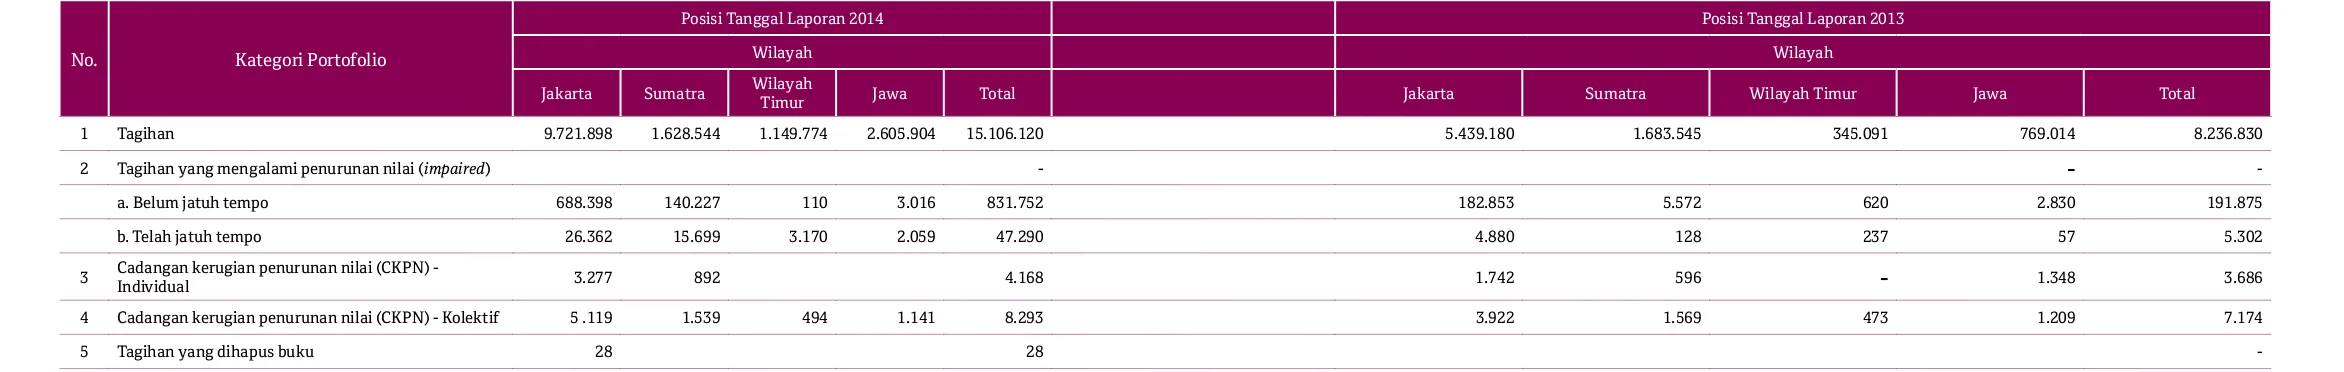 Tabel 2.3.a. Pengungkapan Tagihan Bersih Berdasarkan Sektor Ekonomi - Bank secara IndividualDalam jutaan rupiah 